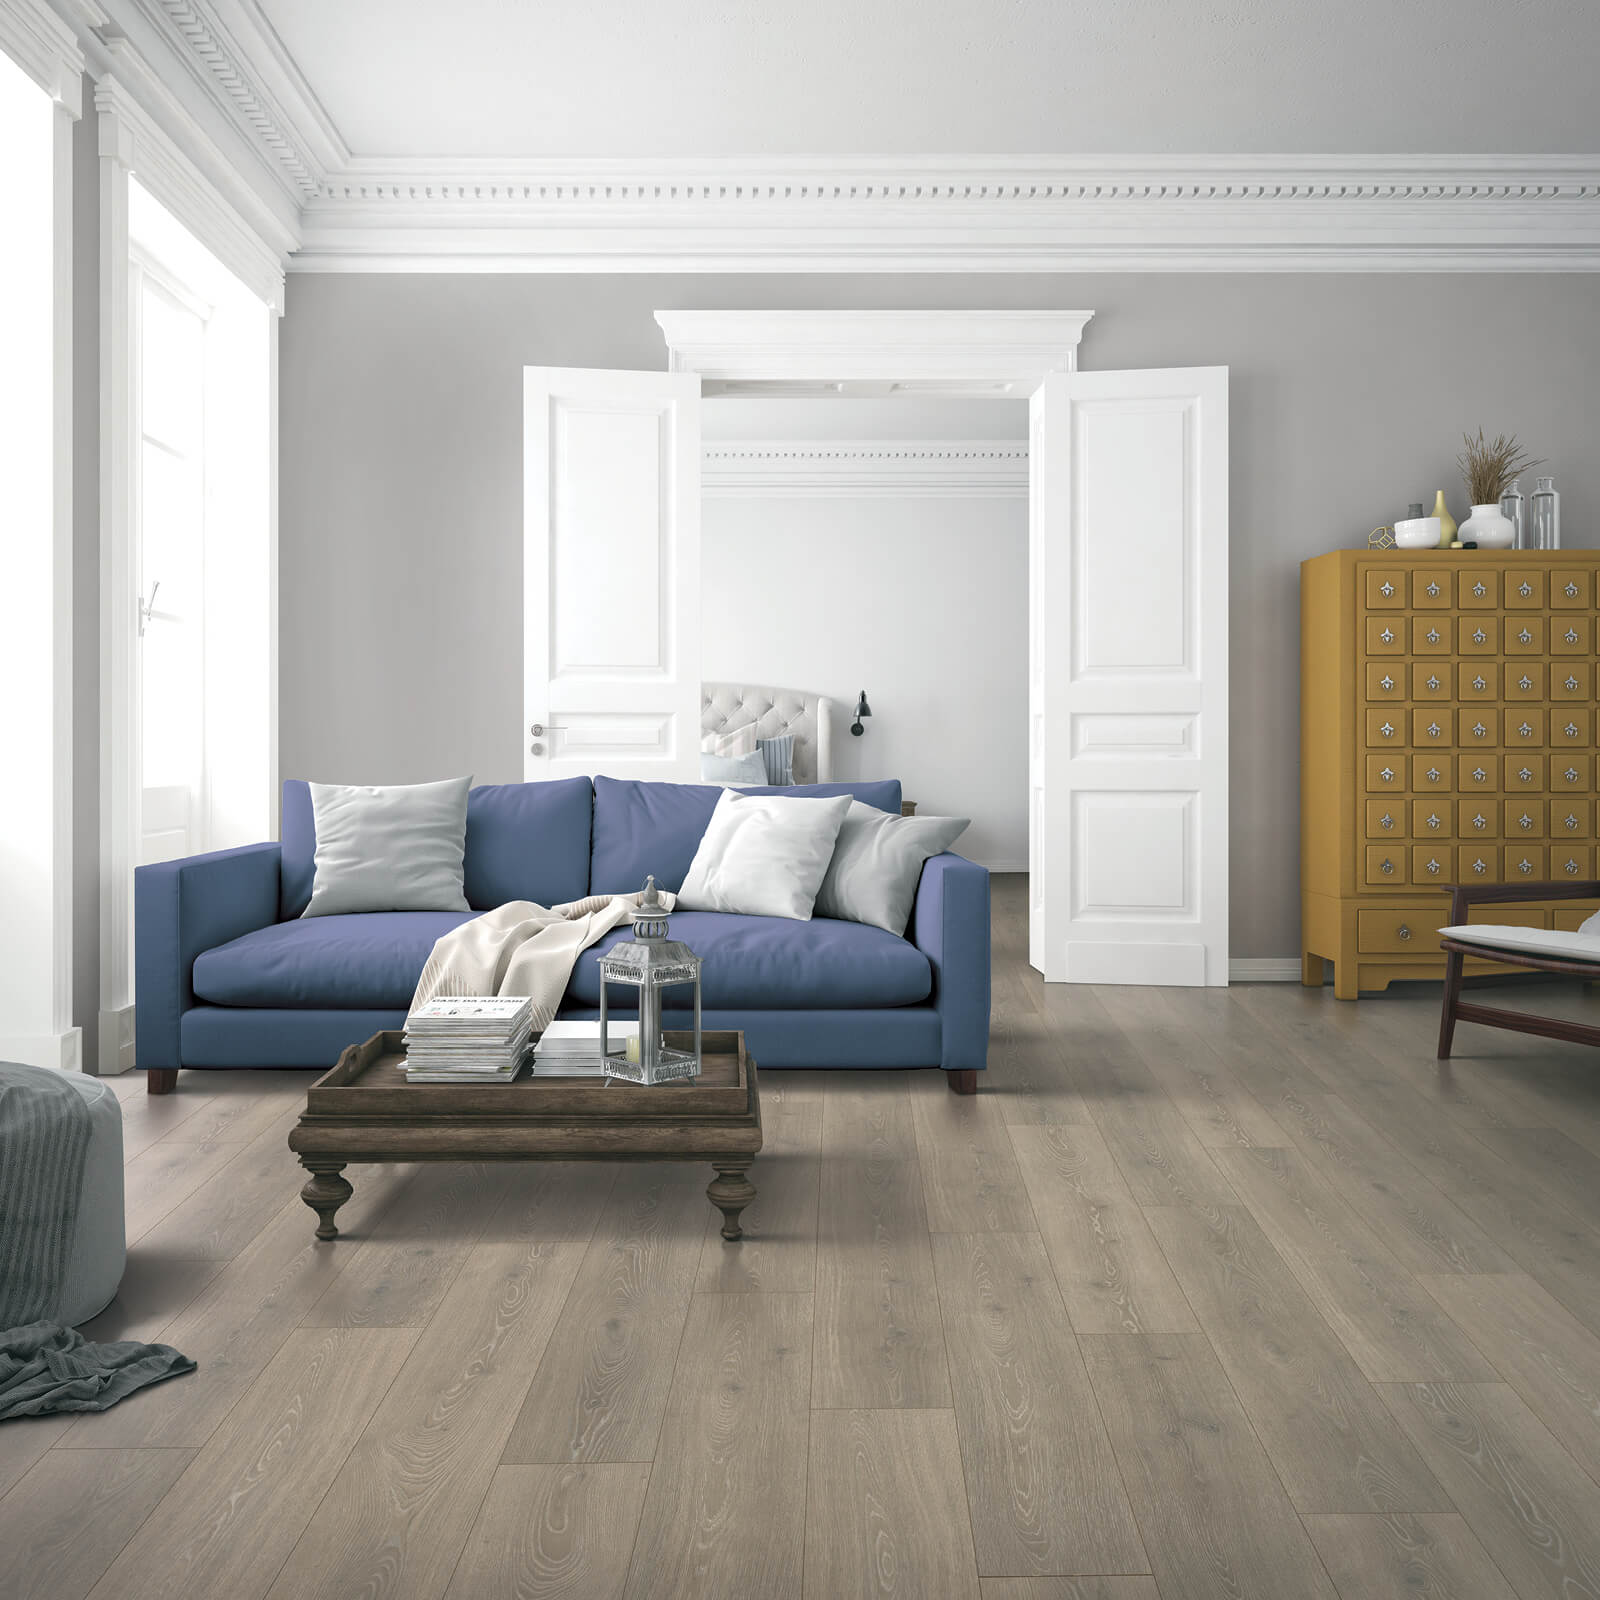 Laminate flooring in living room | Bobs Discount Carpet Inc